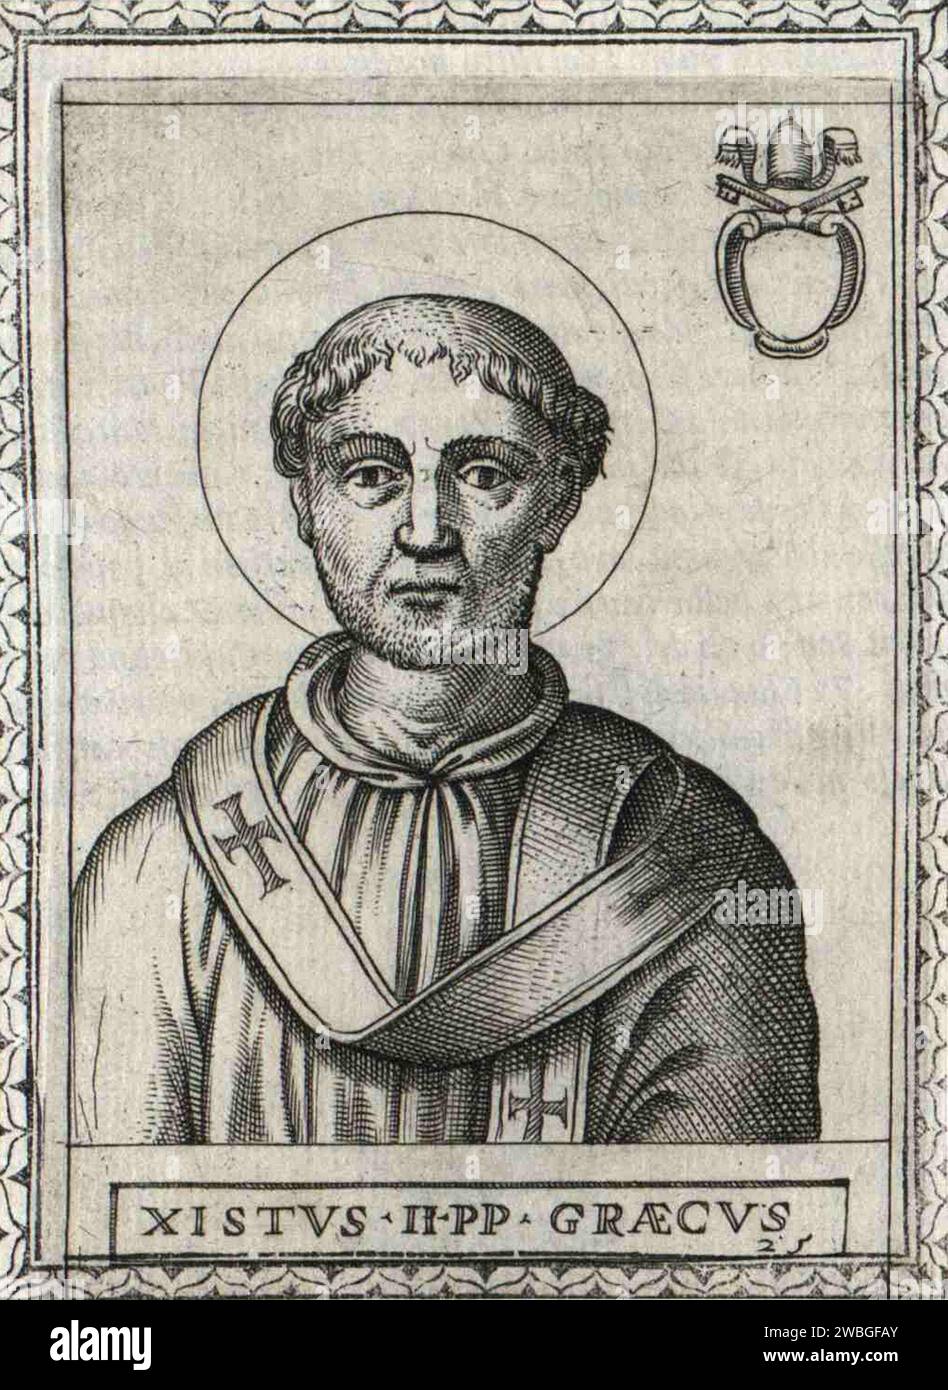 Ein Kupferstich von Papst Sixtus II. Aus dem 17. Jahrhundert, der von 257 bis 258 päpstlich war. Er war der 24. Papst und ist auch als Papst Xystus II. Bekannt Er wurde nach nur 340 Tagen im Oval enthauptet, als Kaiser Valerian eine Reihe von Christenverfolgungen einleitete. Stockfoto